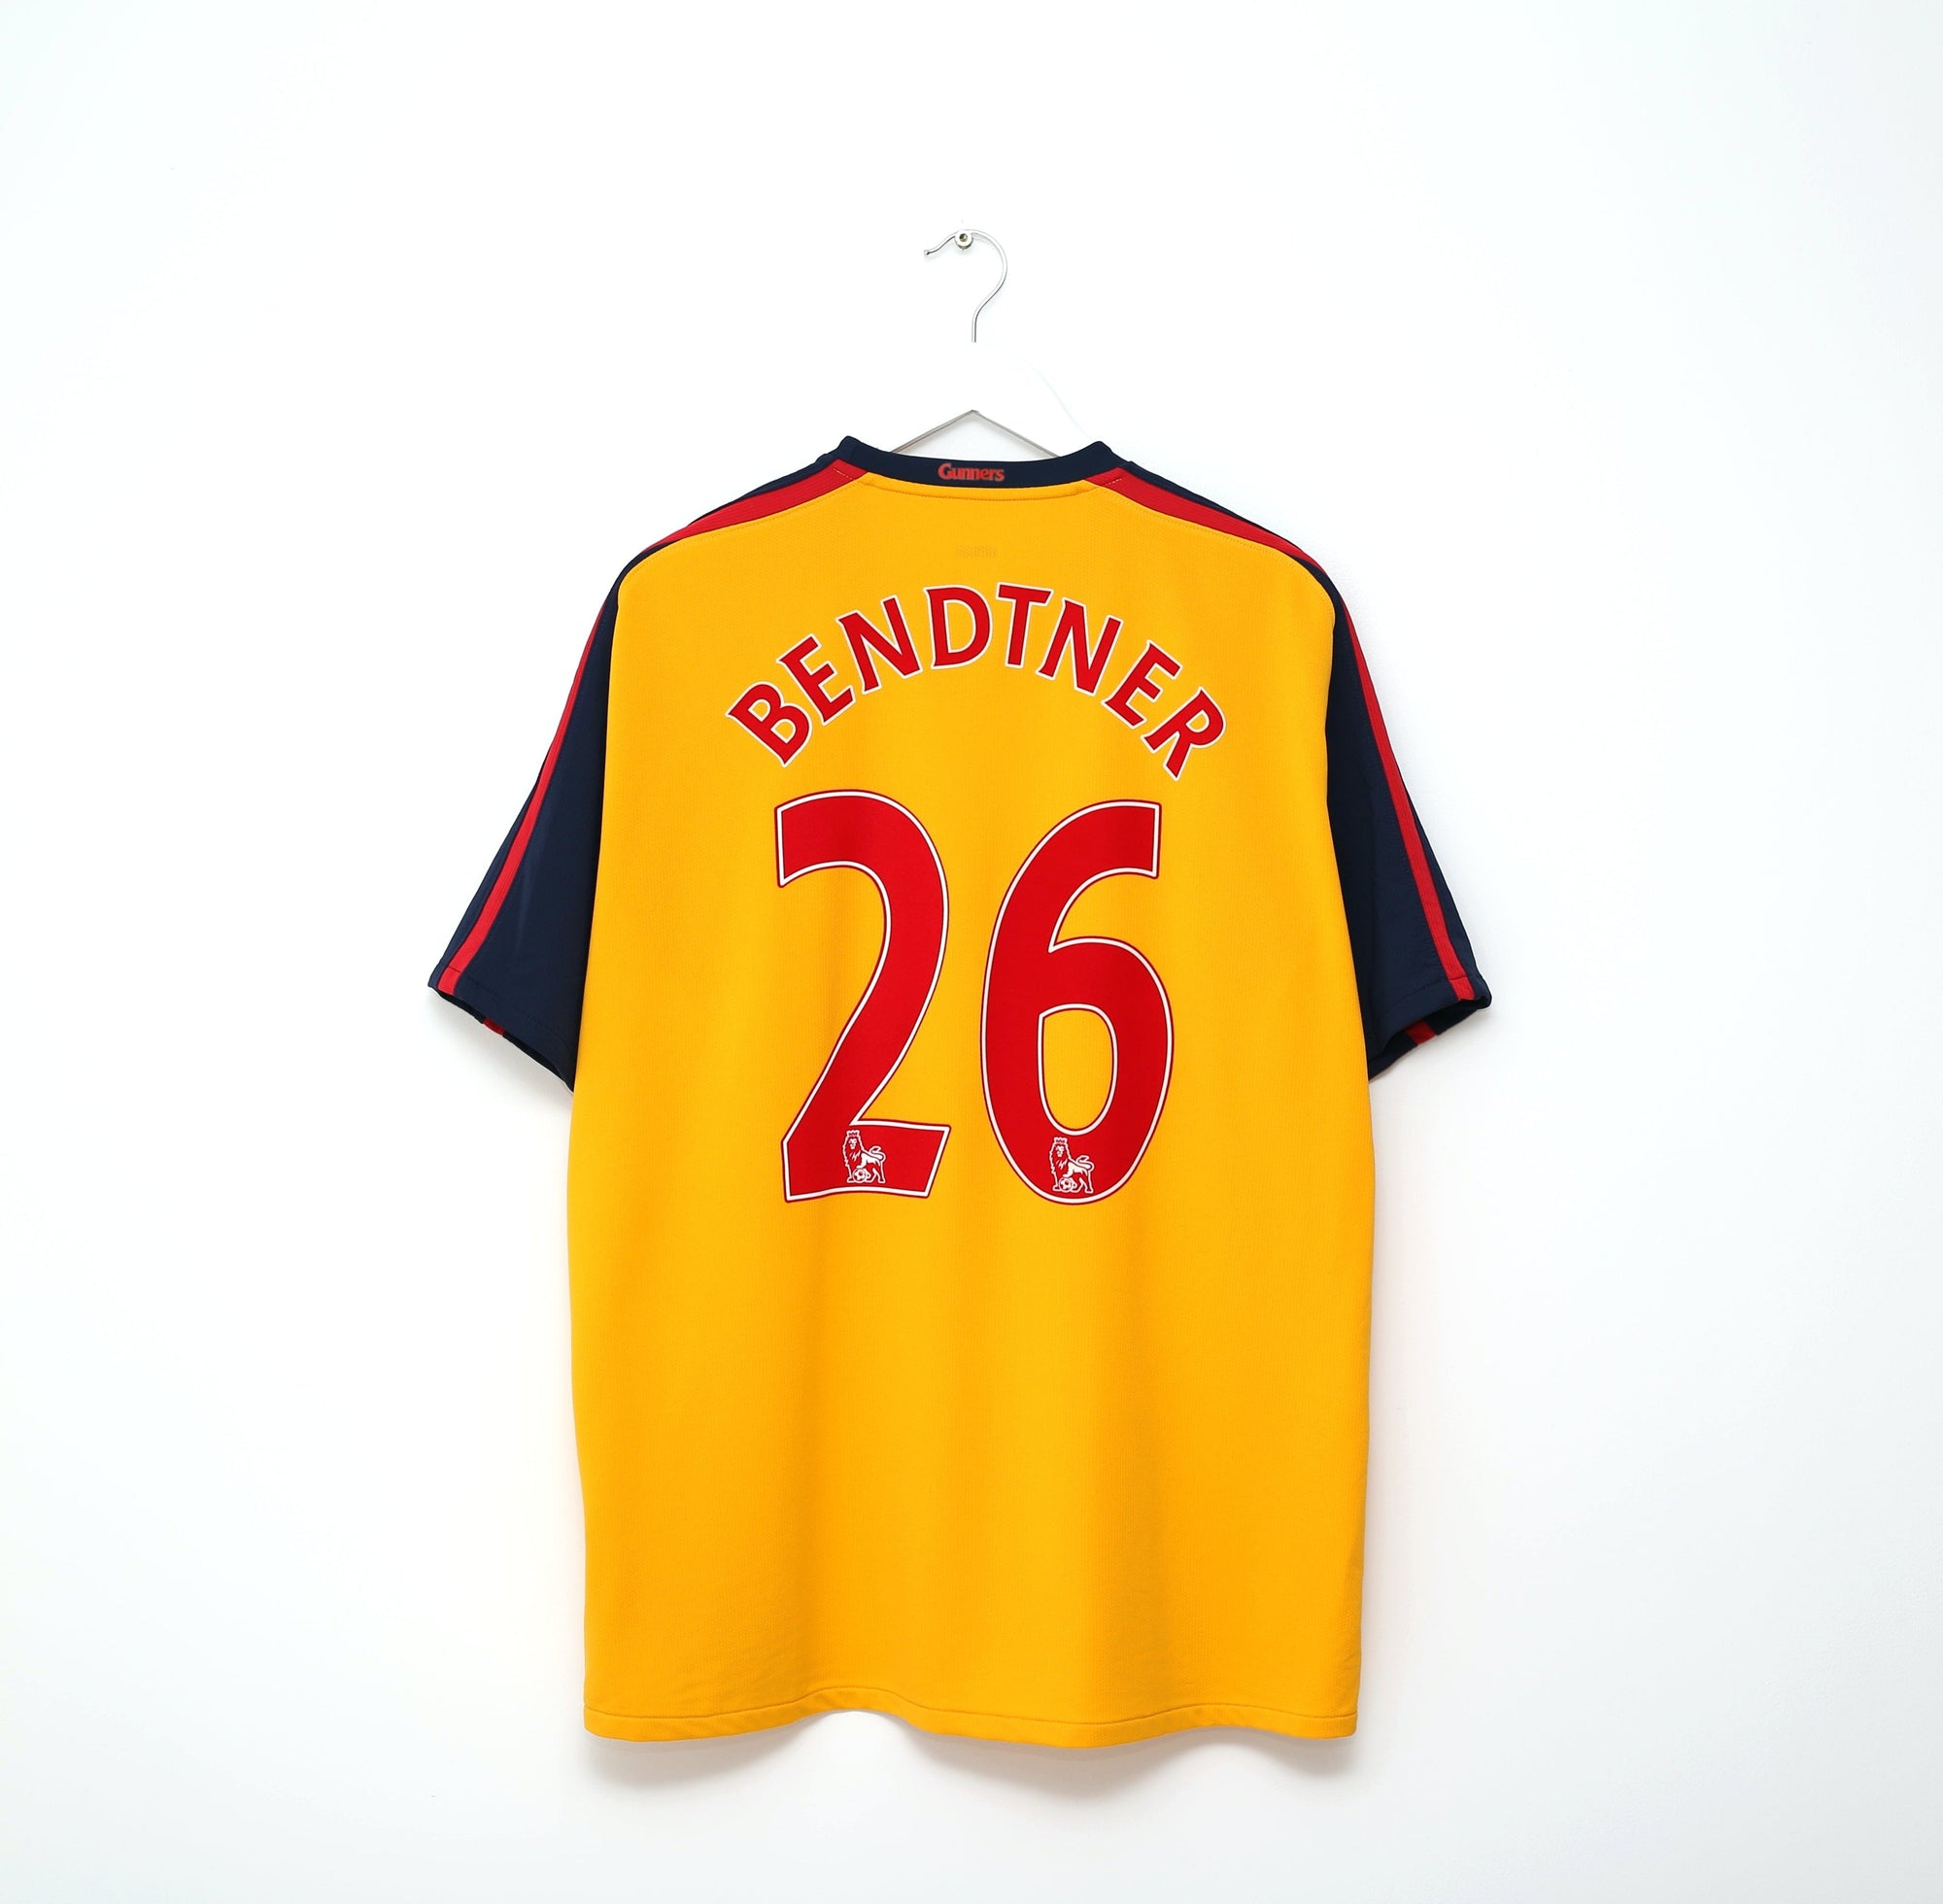 2008/09 BENDTNER #26 Arsenal Vintage Nike Away Football Shirt Jersey (XL)